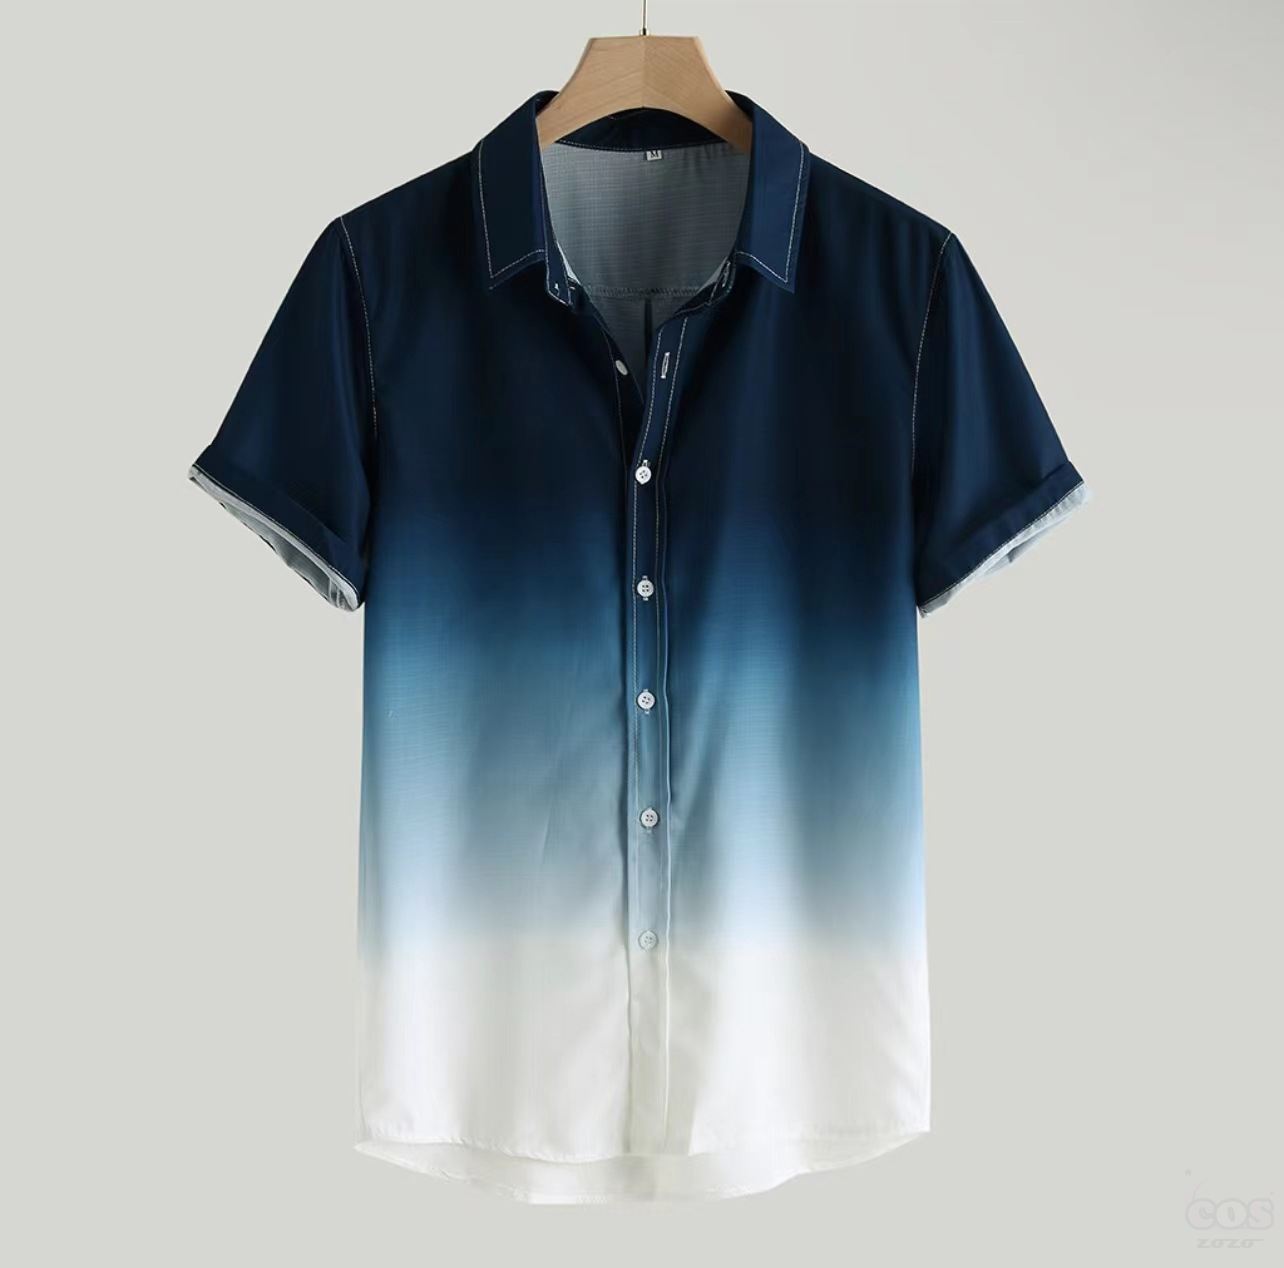 シャツシンプル韓国ファッション オシャレ 服半袖折り襟シングルブレストグリーンダークブルーライトブルーオレンジボタングラデーション色